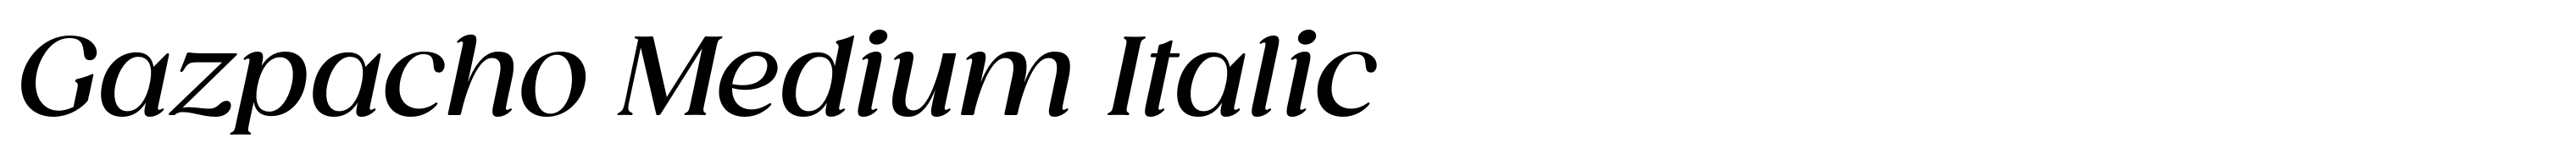 Gazpacho Medium Italic